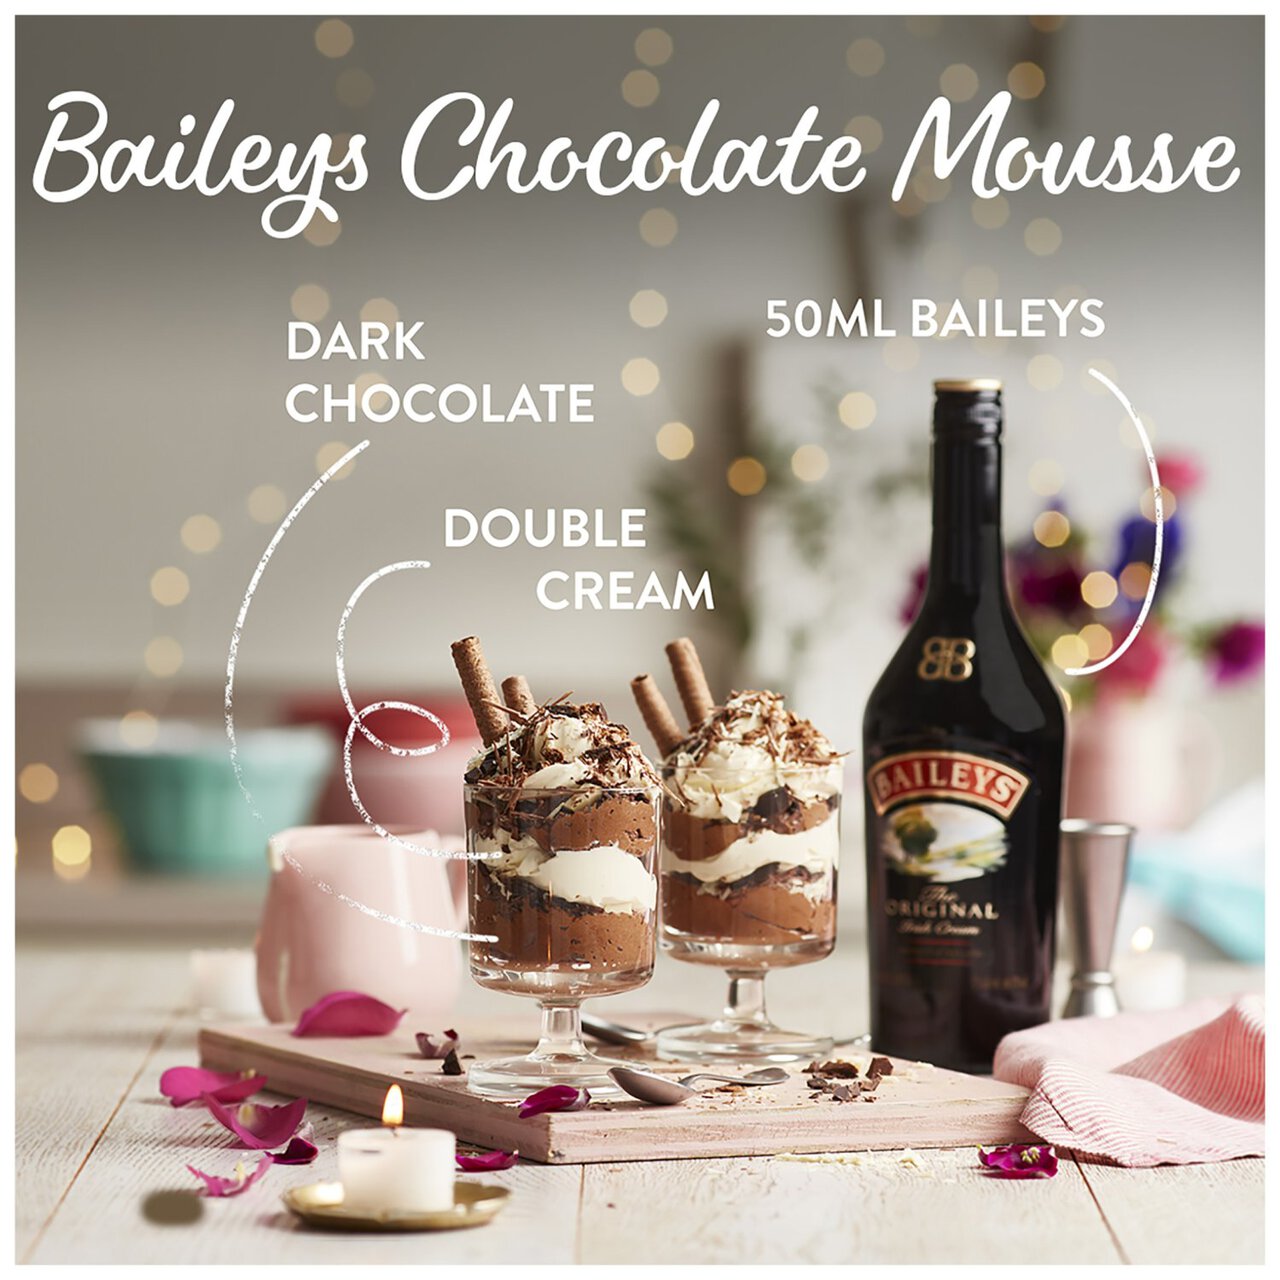 Baileys Original Irish Cream Liqueur 1l